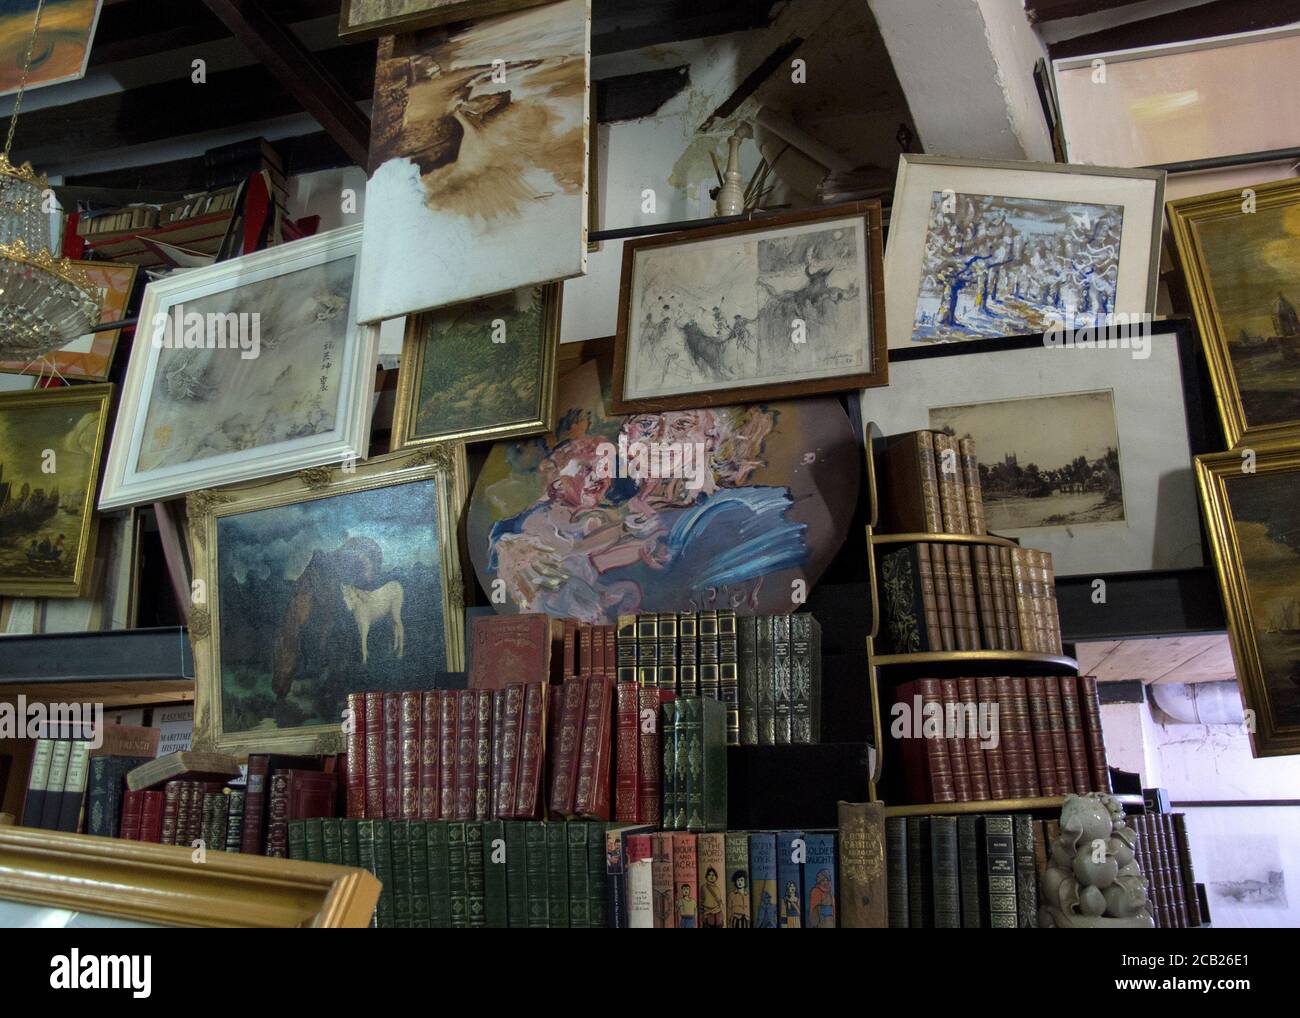 Ancienne boutique de livres à main levée avec des images et des peintures accrochées au mur Banque D'Images